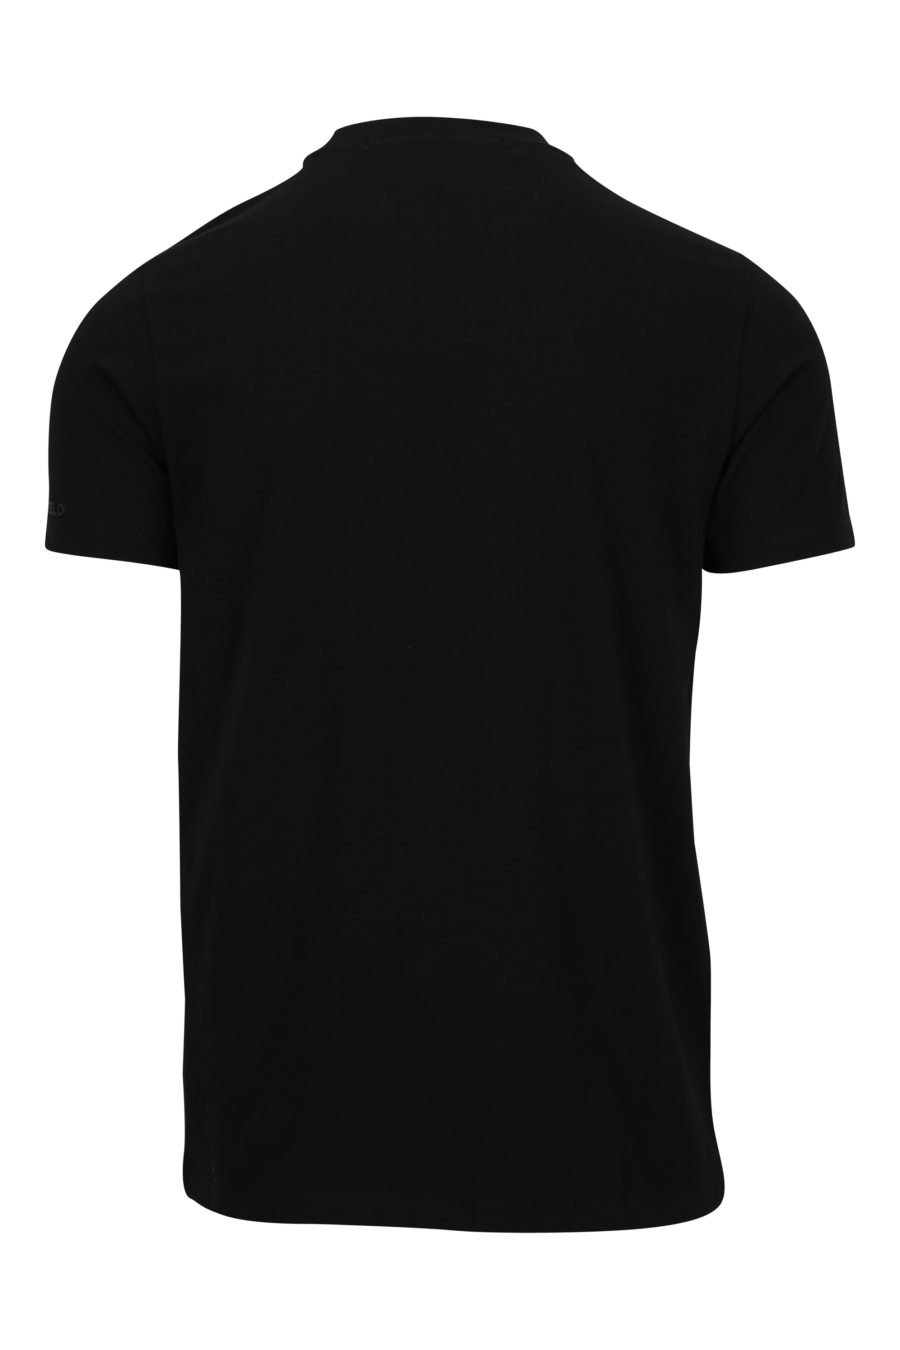 Camiseta negra con maxilogo "karl" en degradé centrado - 4062226788700 1